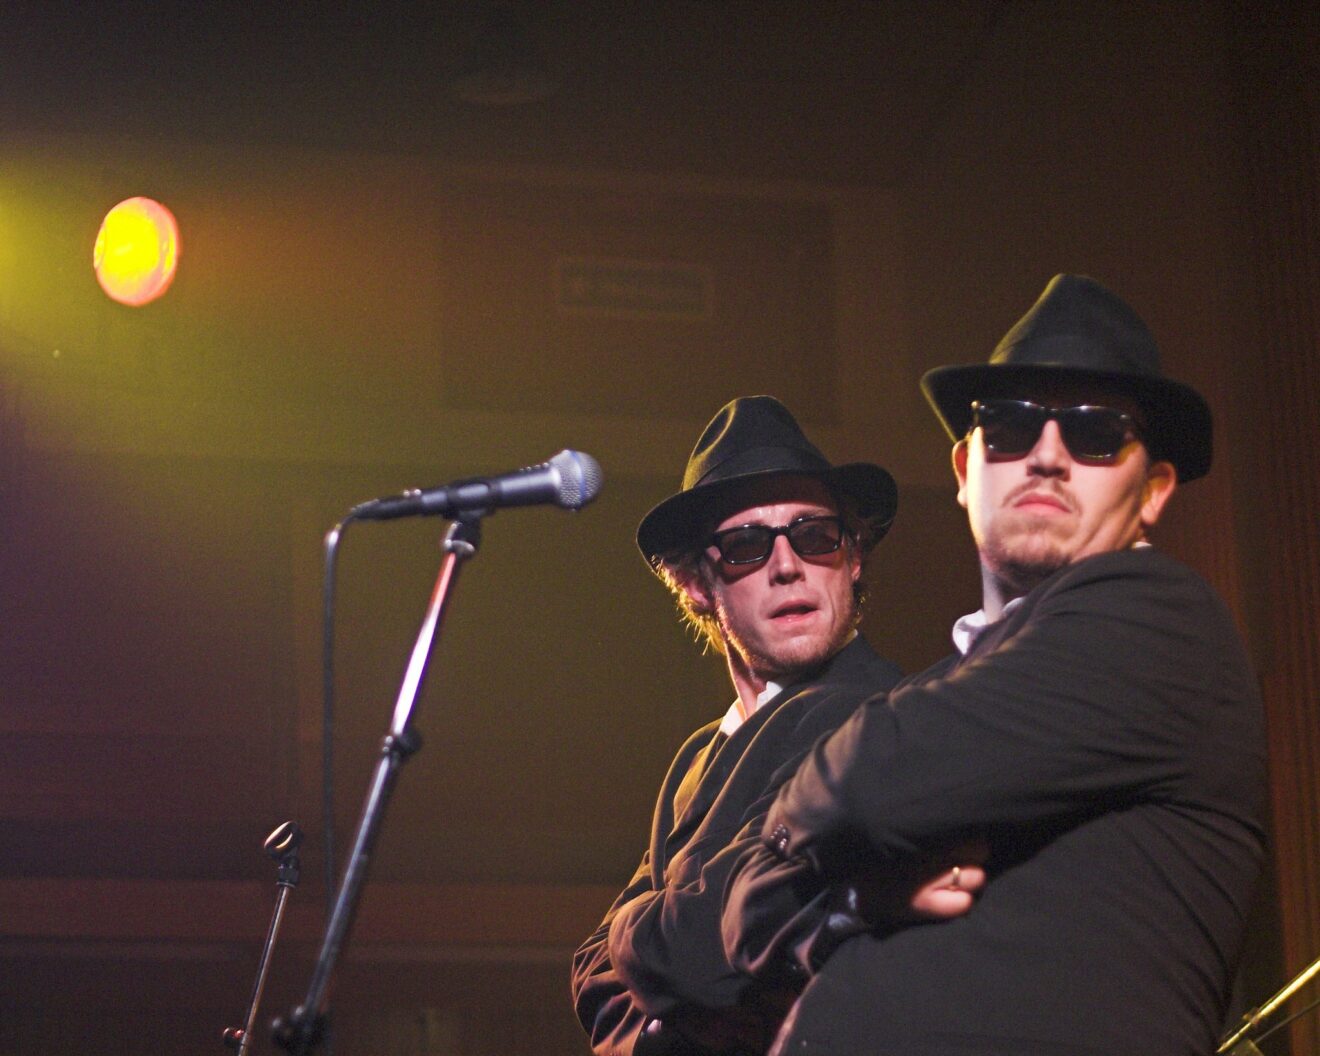 Danseriet præsenterer Copenhagen Blues Brothers på Gimle